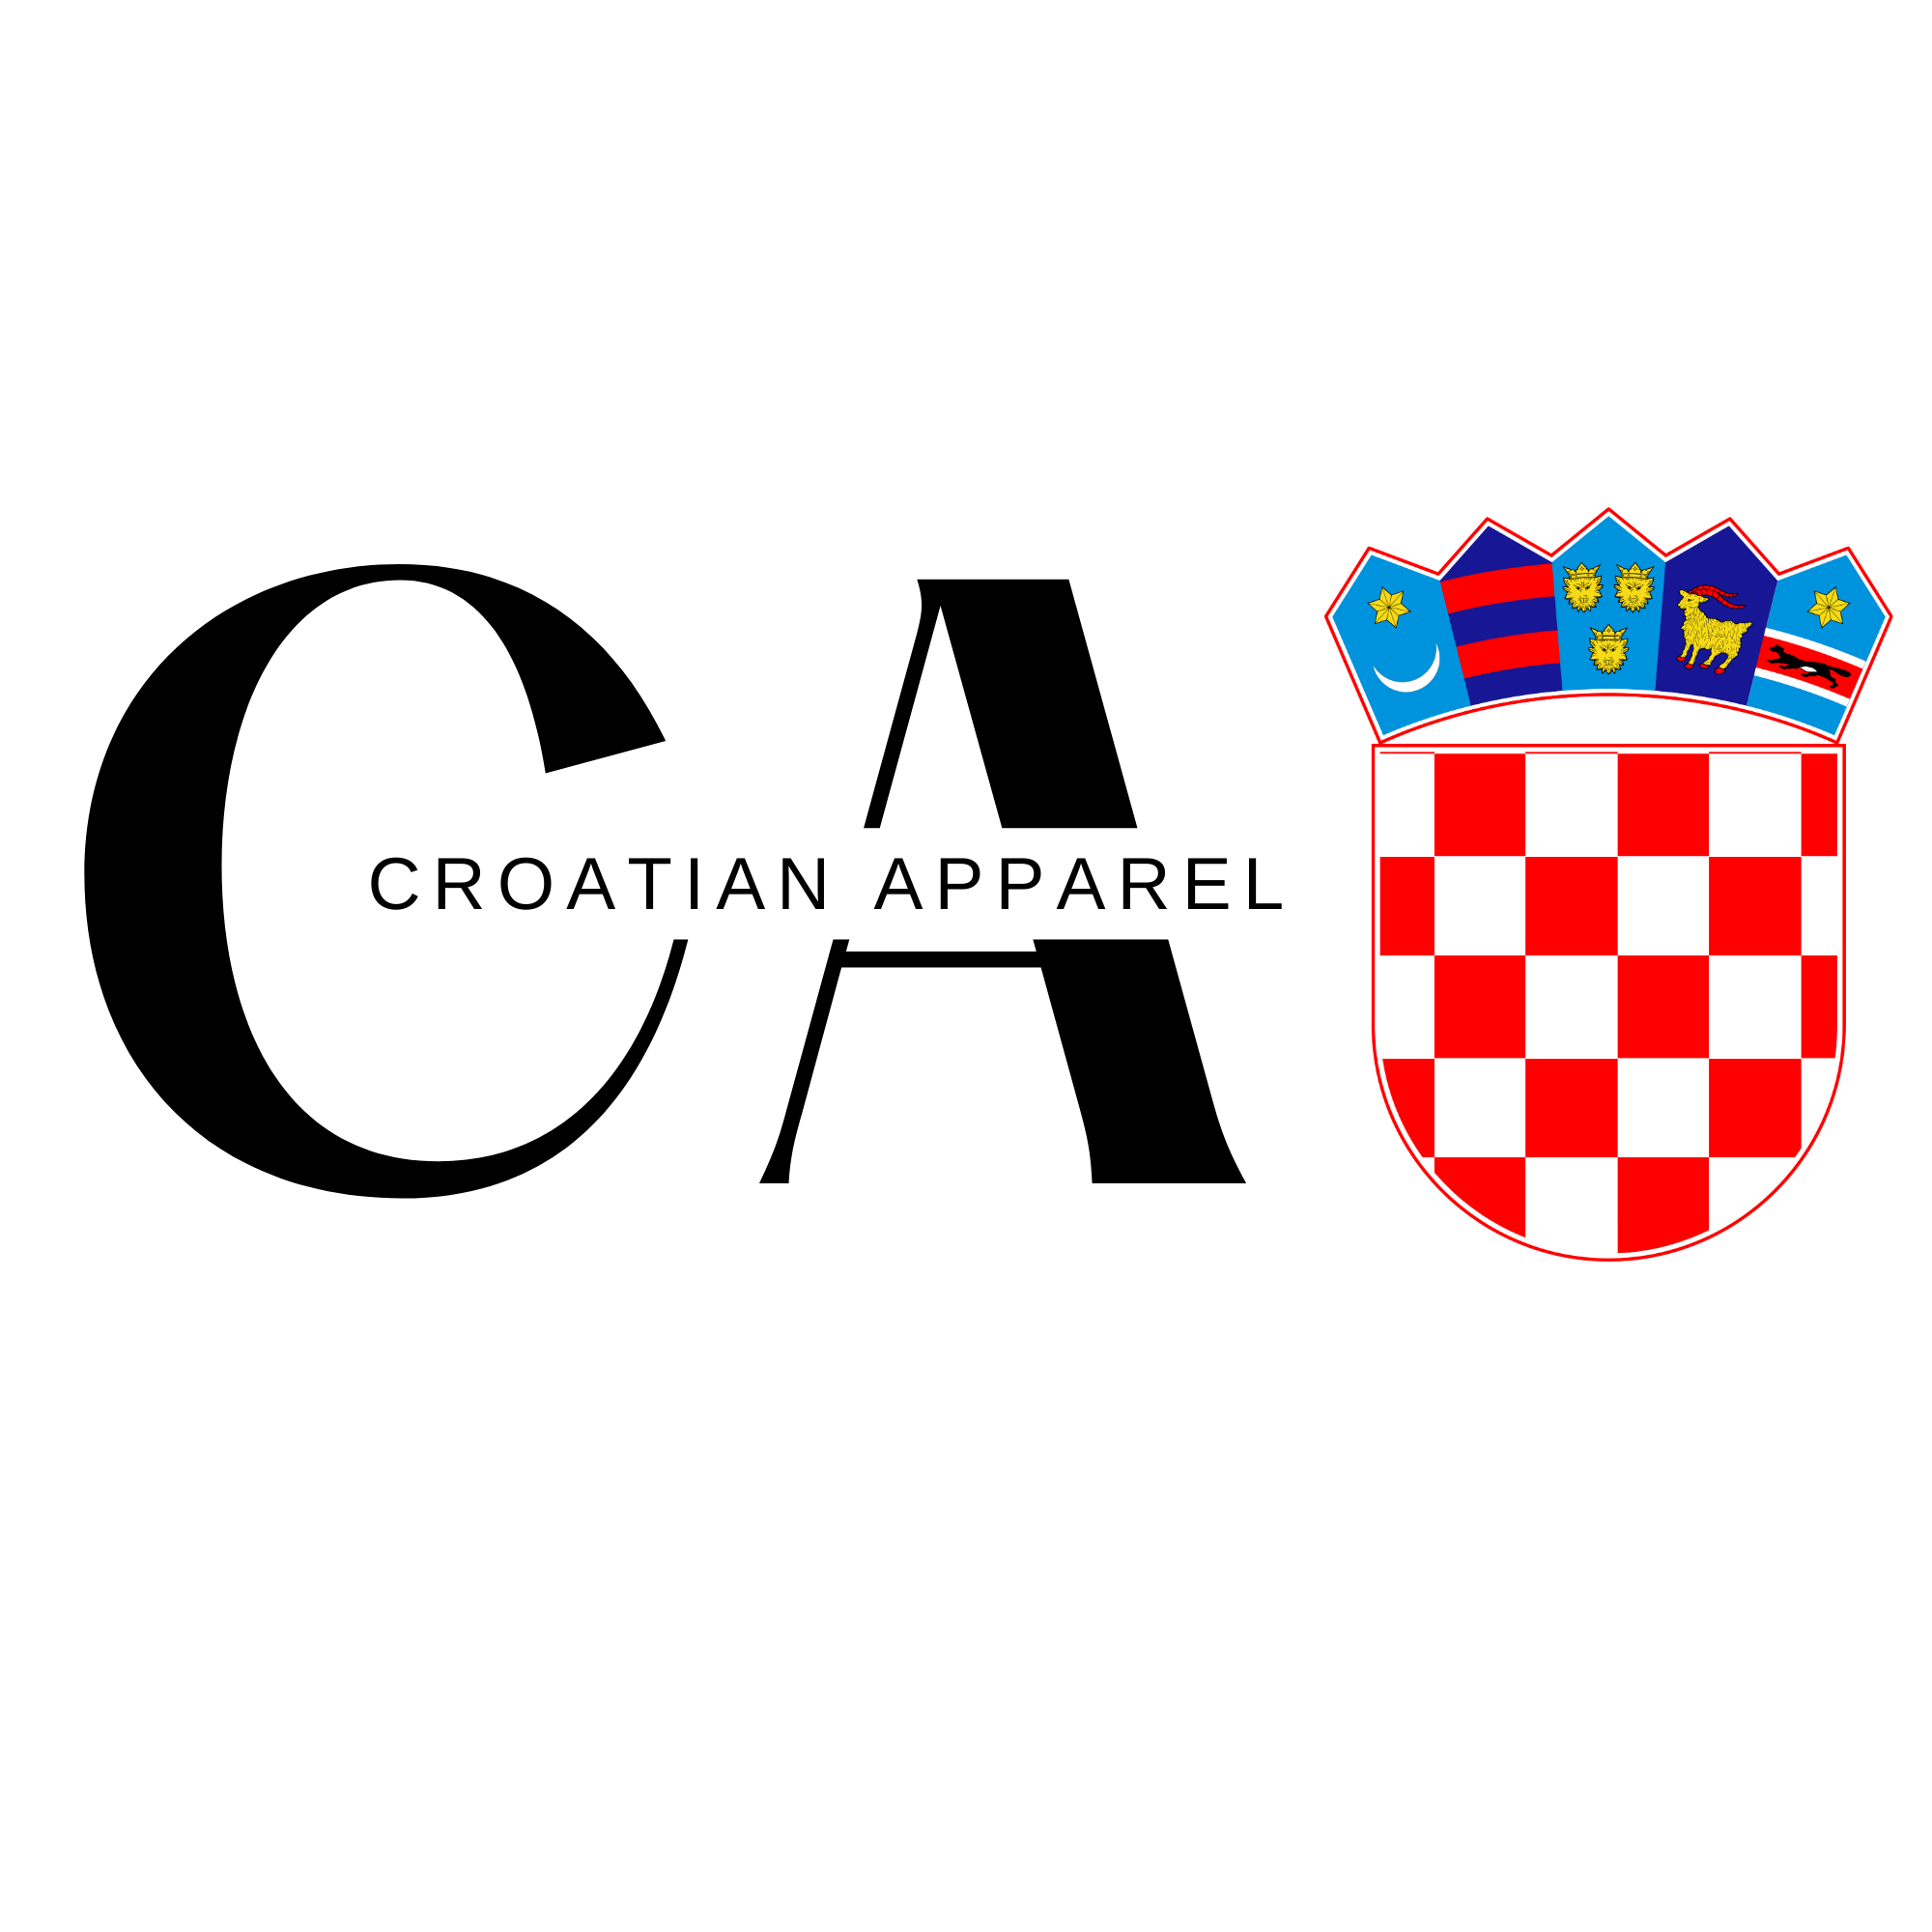 Croatian Apparel